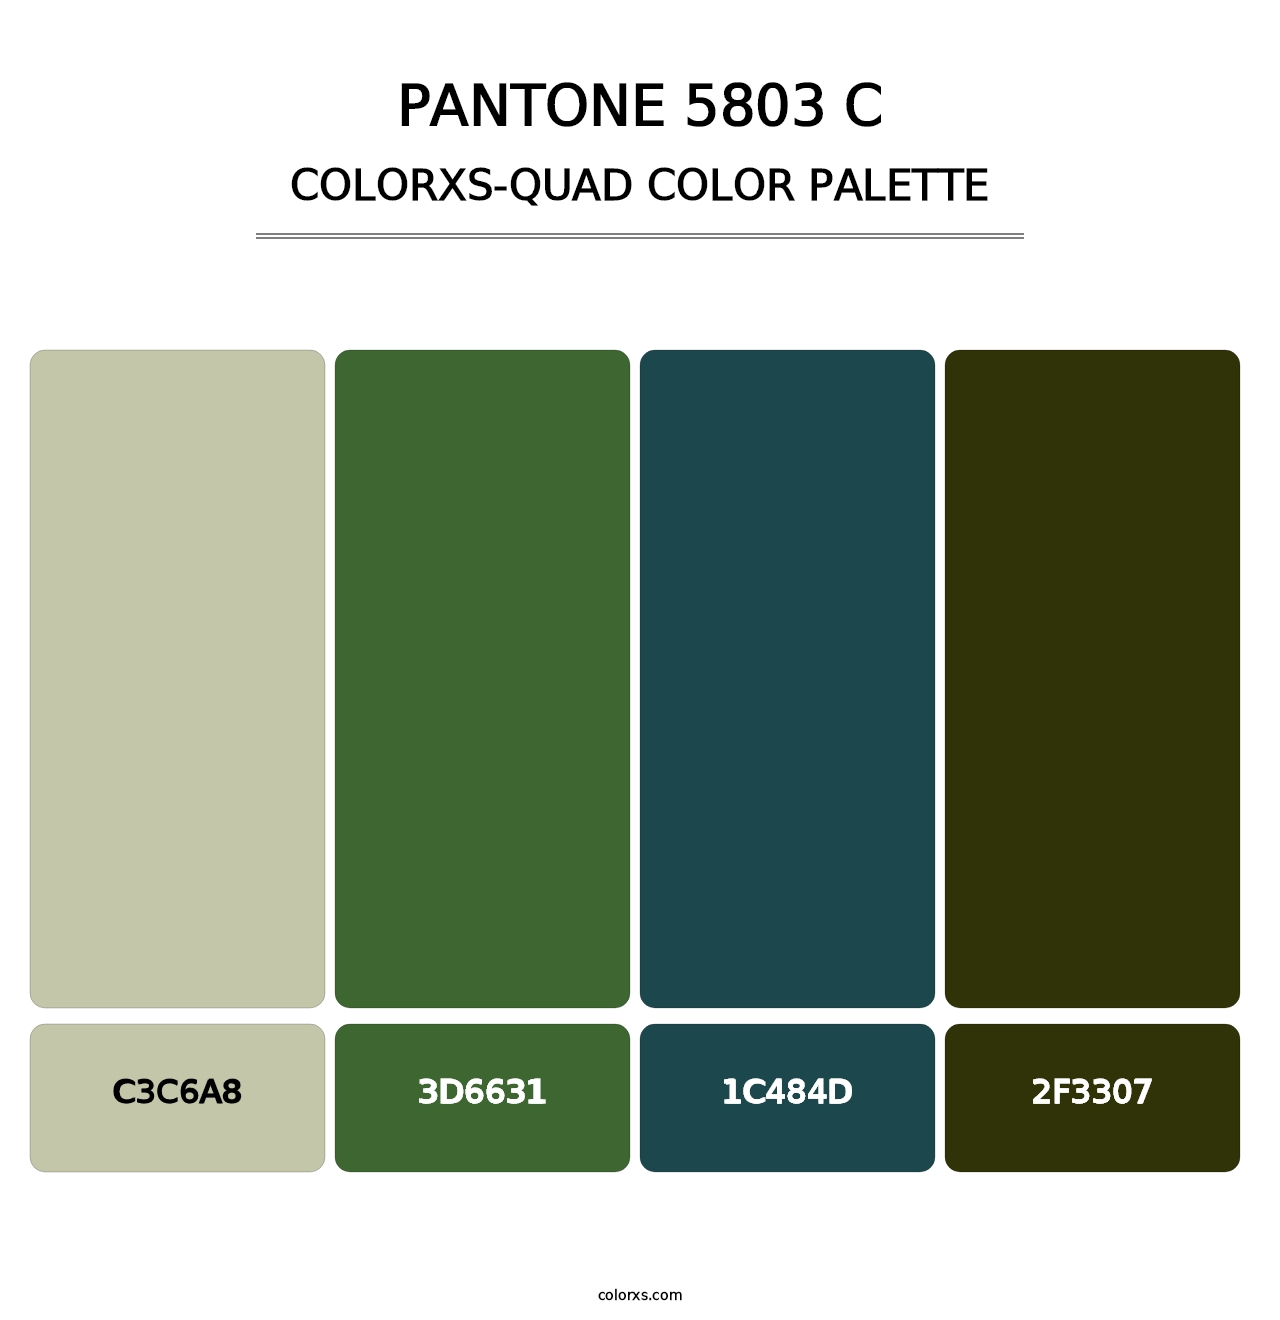 PANTONE 5803 C - Colorxs Quad Palette